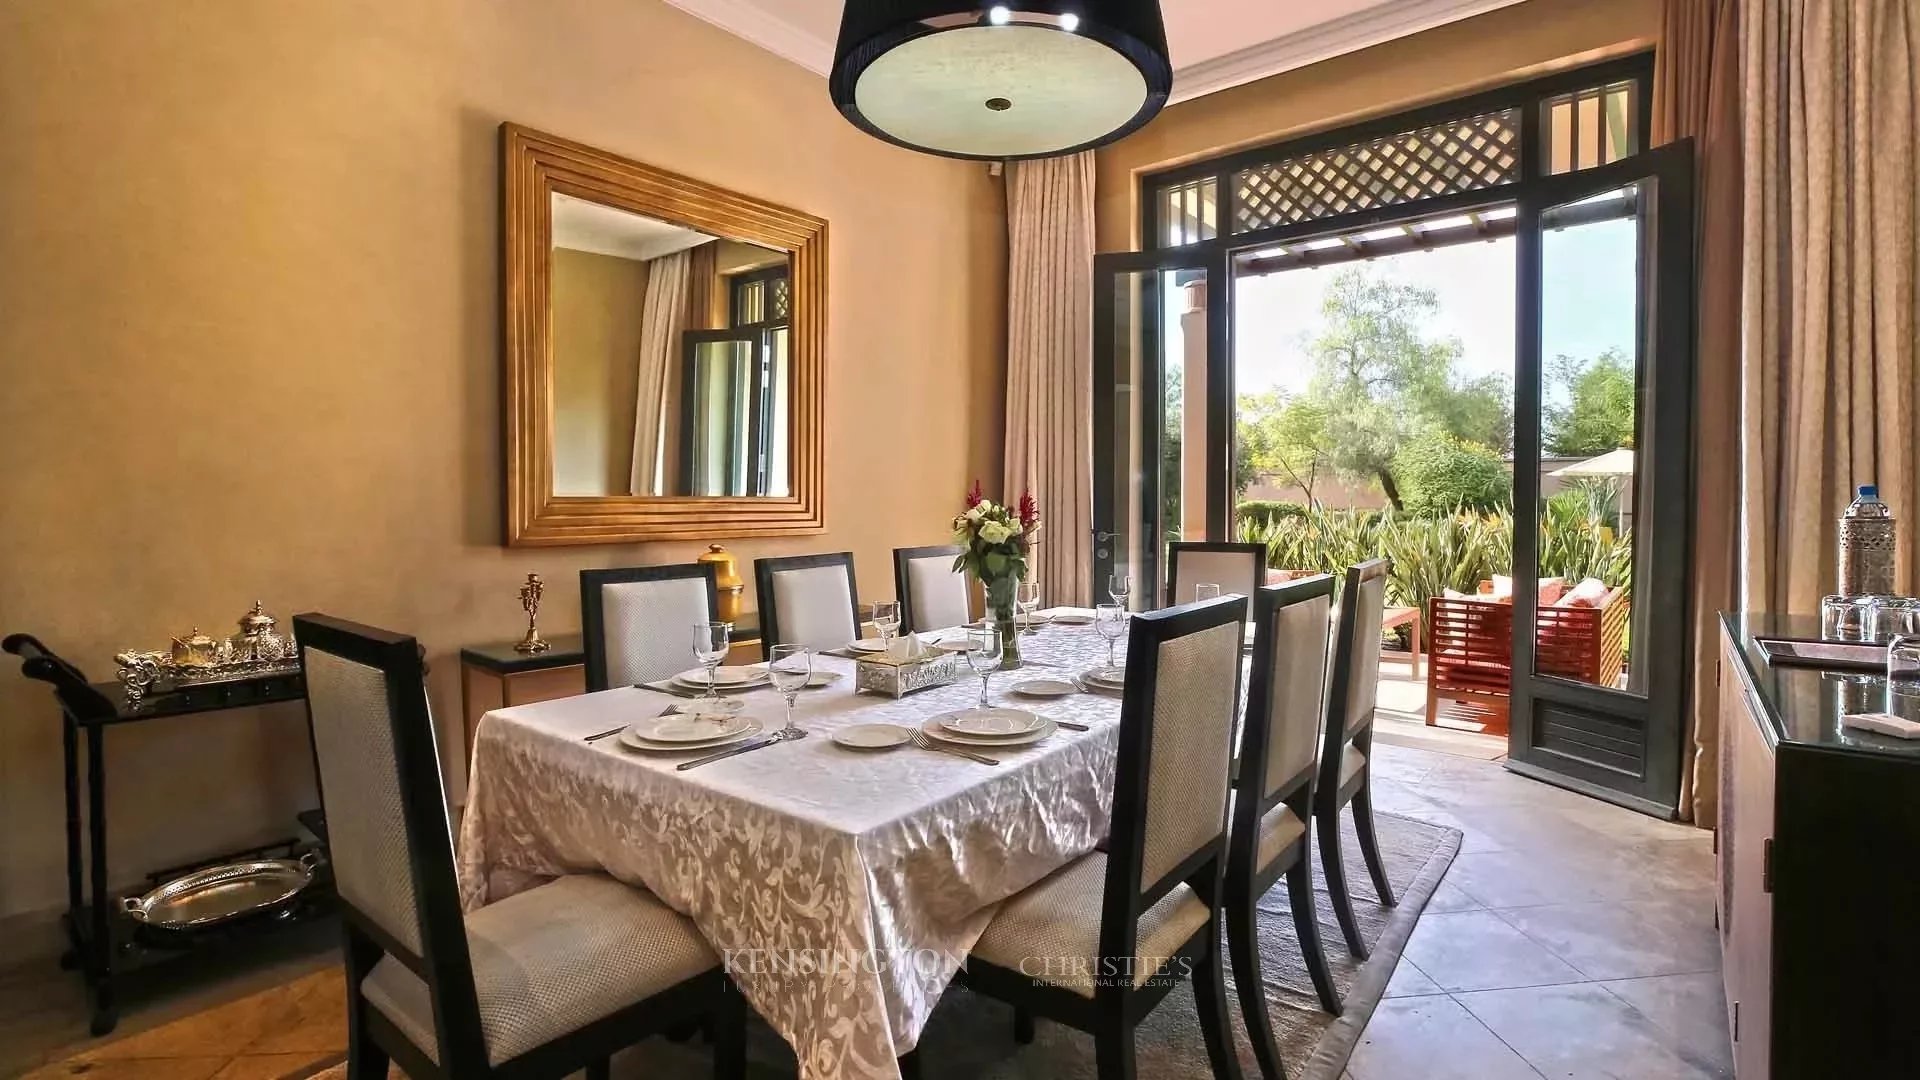 Villa Alwazn in Marrakech, Morocco